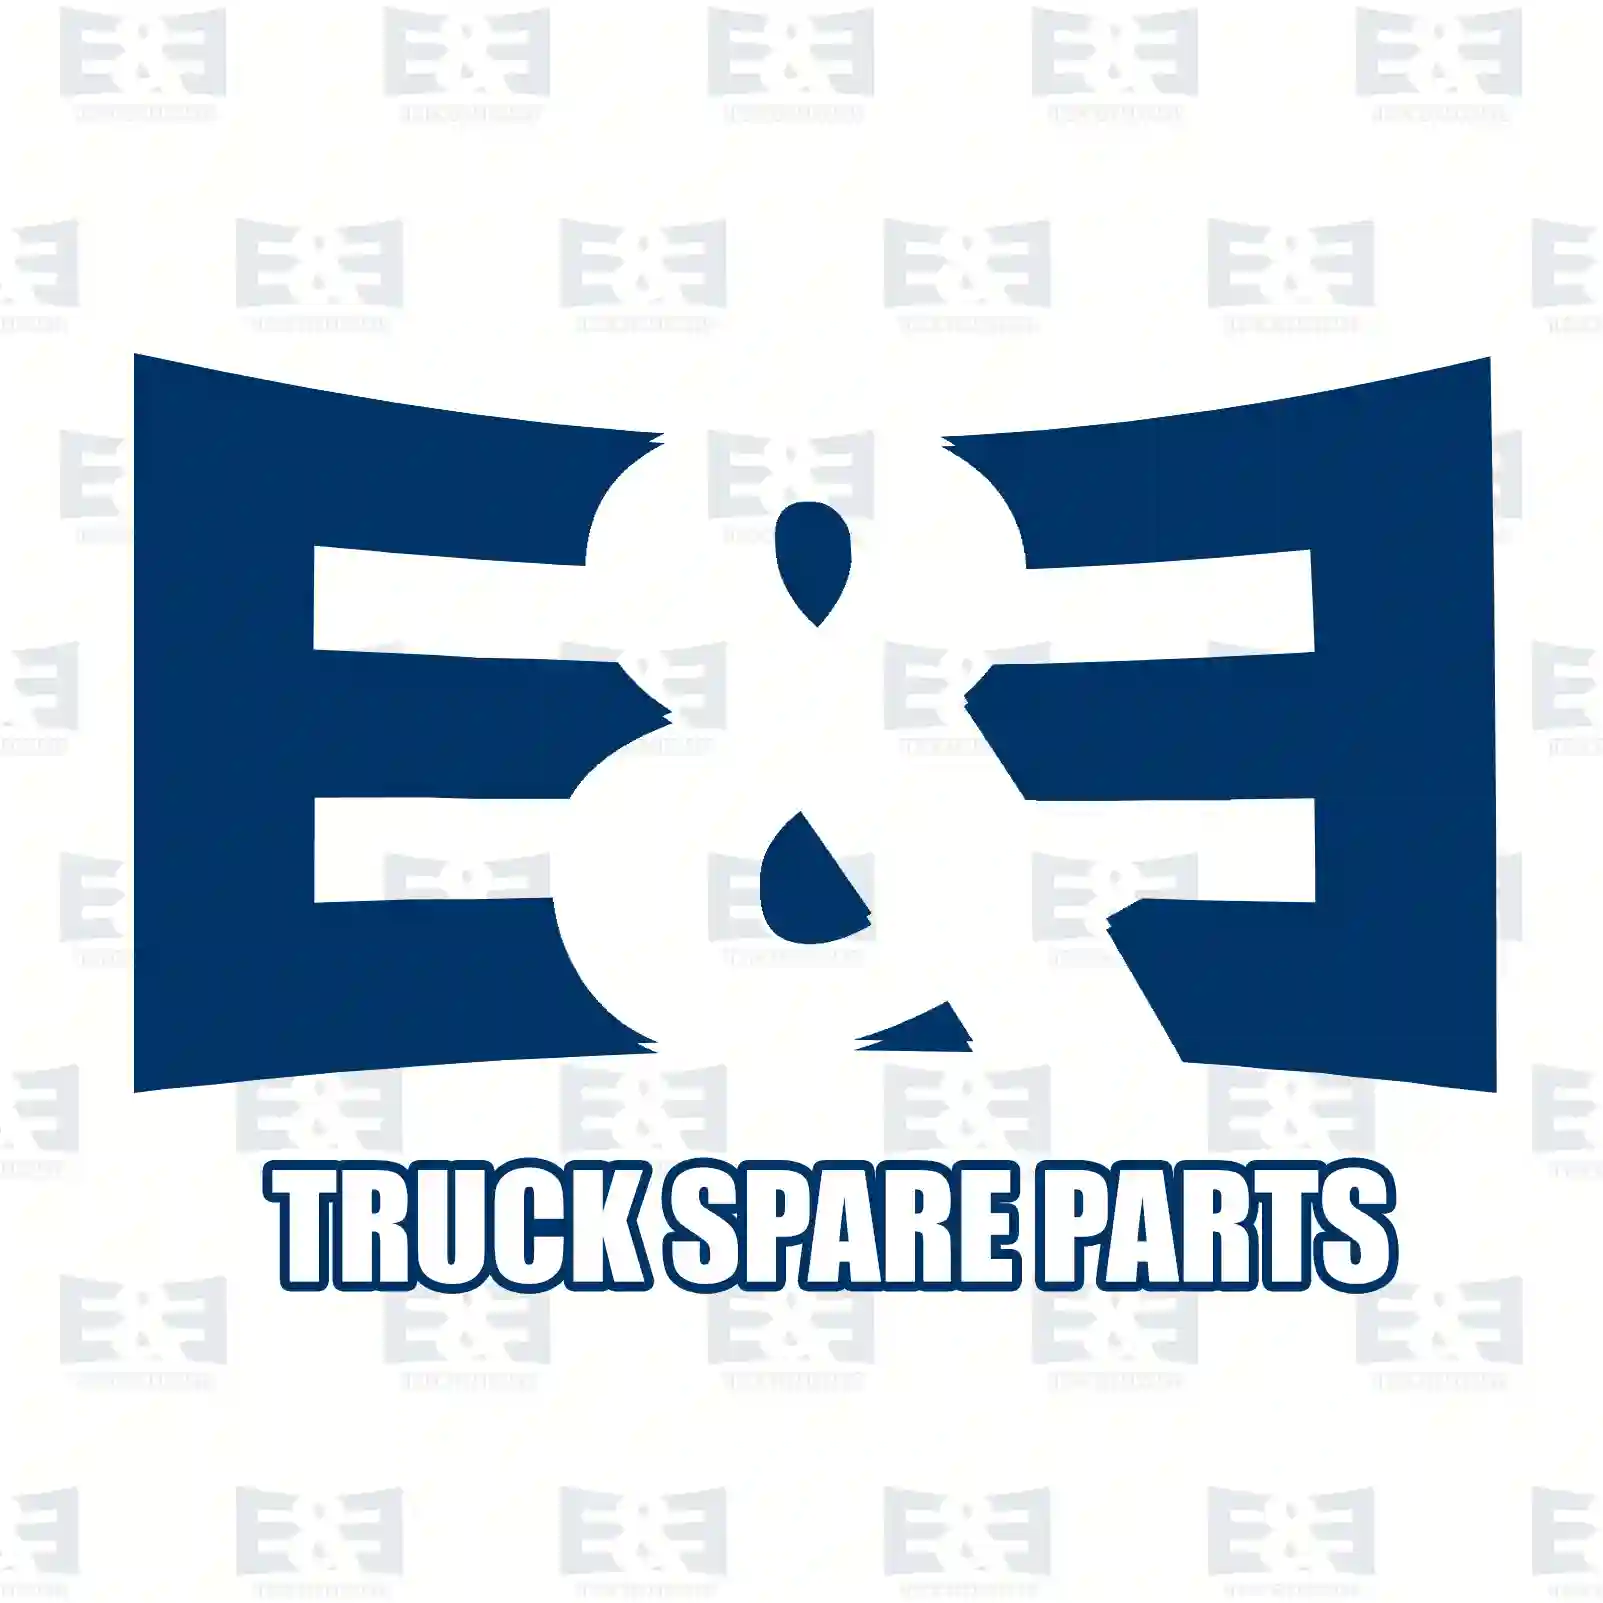 Propeller shaft, 2E2276811, 1923609, 2104248 ||  2E2276811 E&E Truck Spare Parts | Truck Spare Parts, Auotomotive Spare Parts Propeller shaft, 2E2276811, 1923609, 2104248 ||  2E2276811 E&E Truck Spare Parts | Truck Spare Parts, Auotomotive Spare Parts